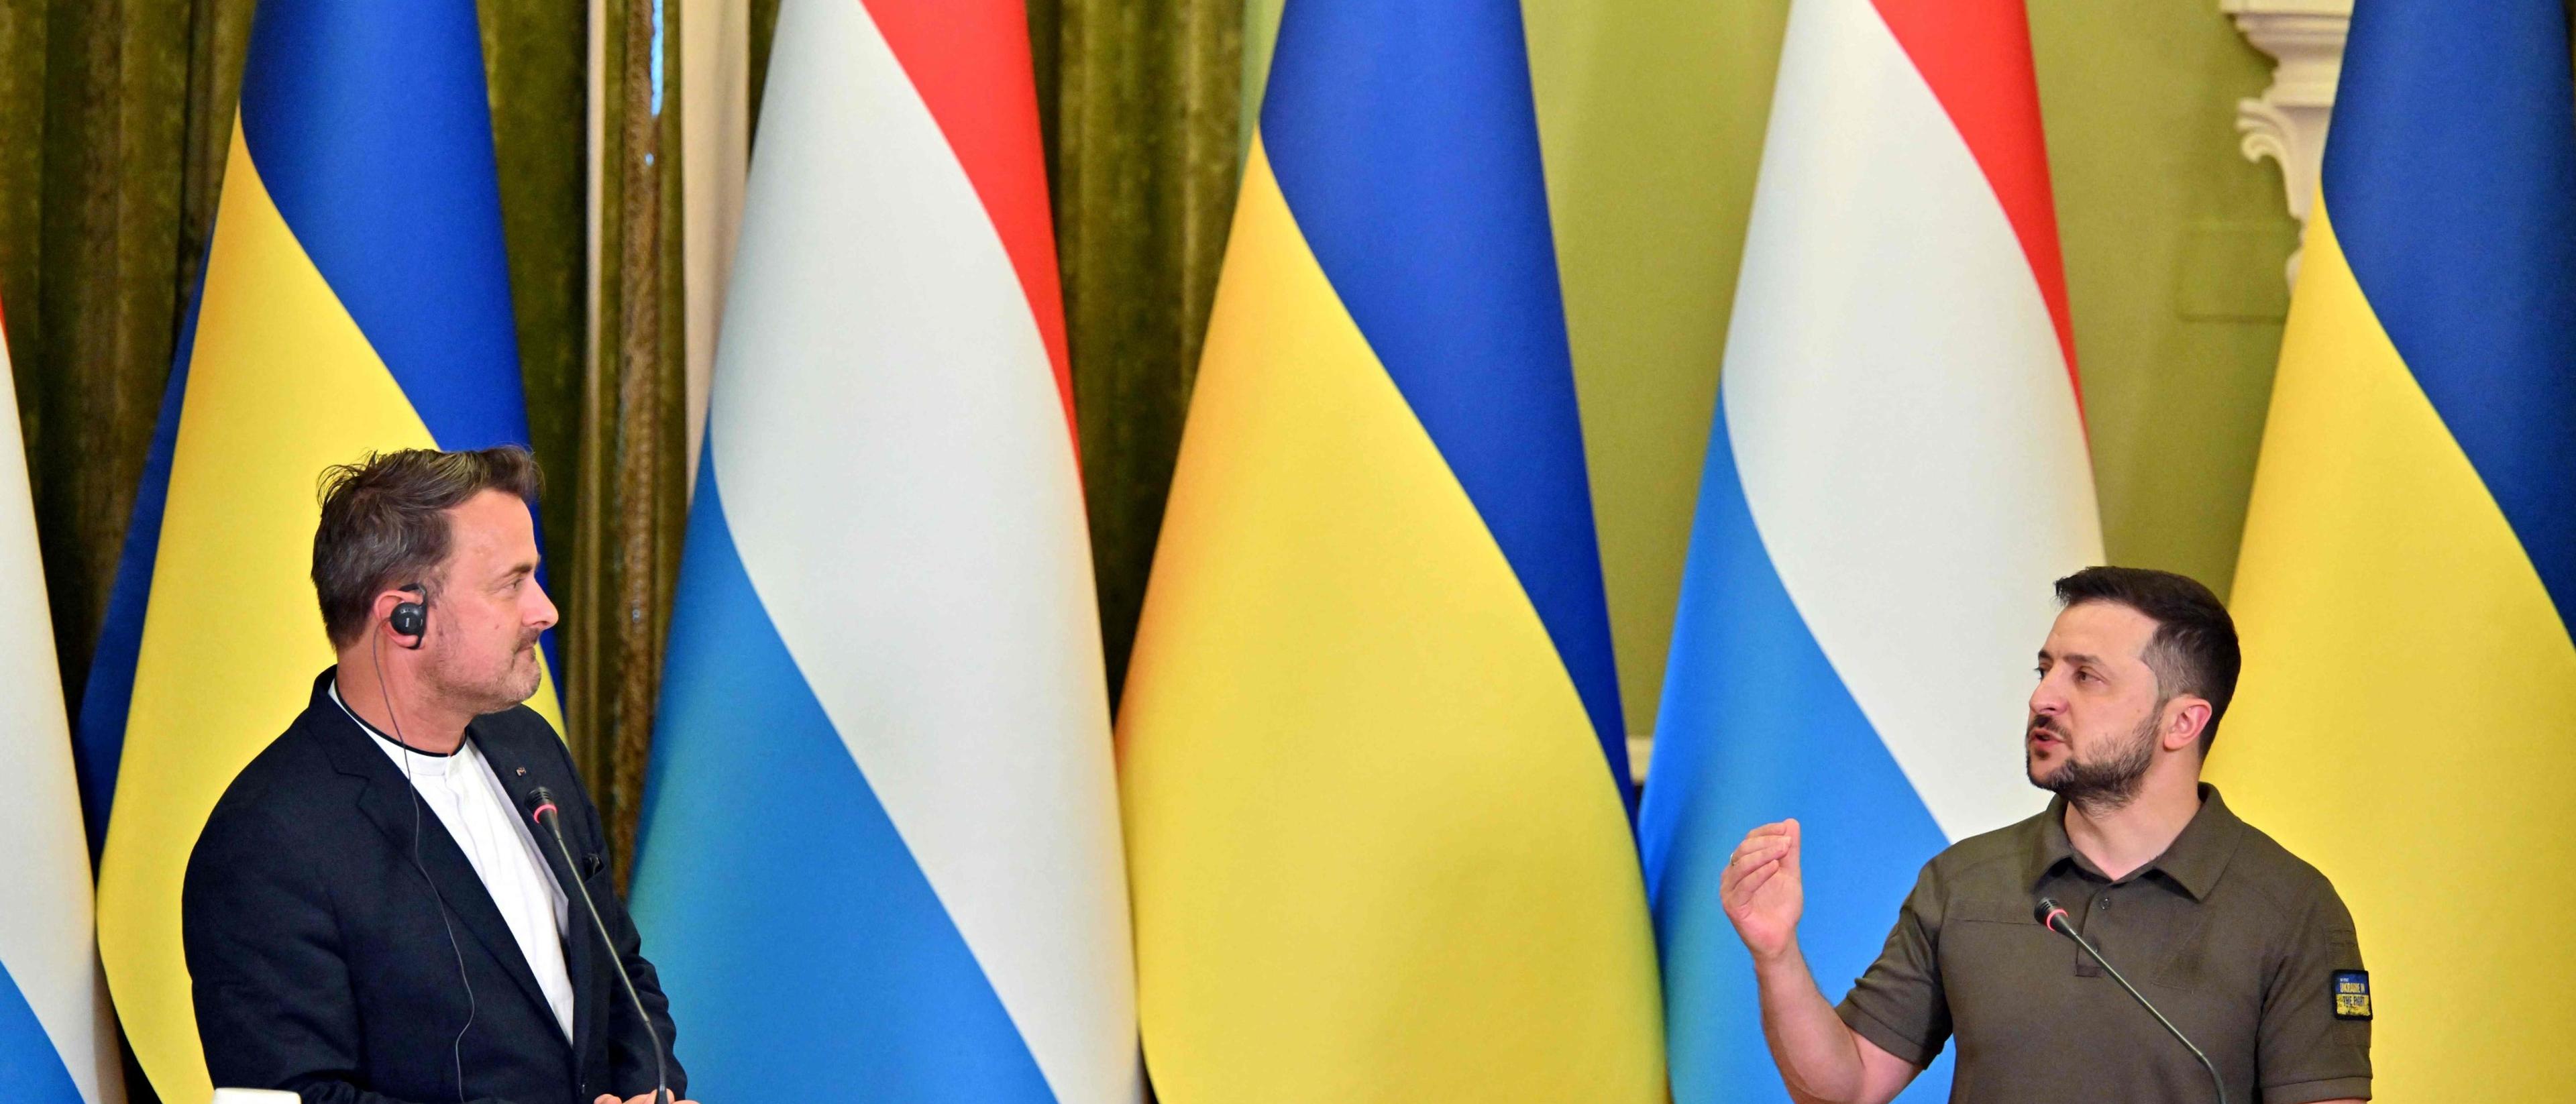 Bettel a été le premier chef de gouvernement de l'UE à rendre visite à Zelensky après que la Commission européenne s'est prononcée en faveur de l'octroi à l'Ukraine du statut de candidat à l'adhésion.